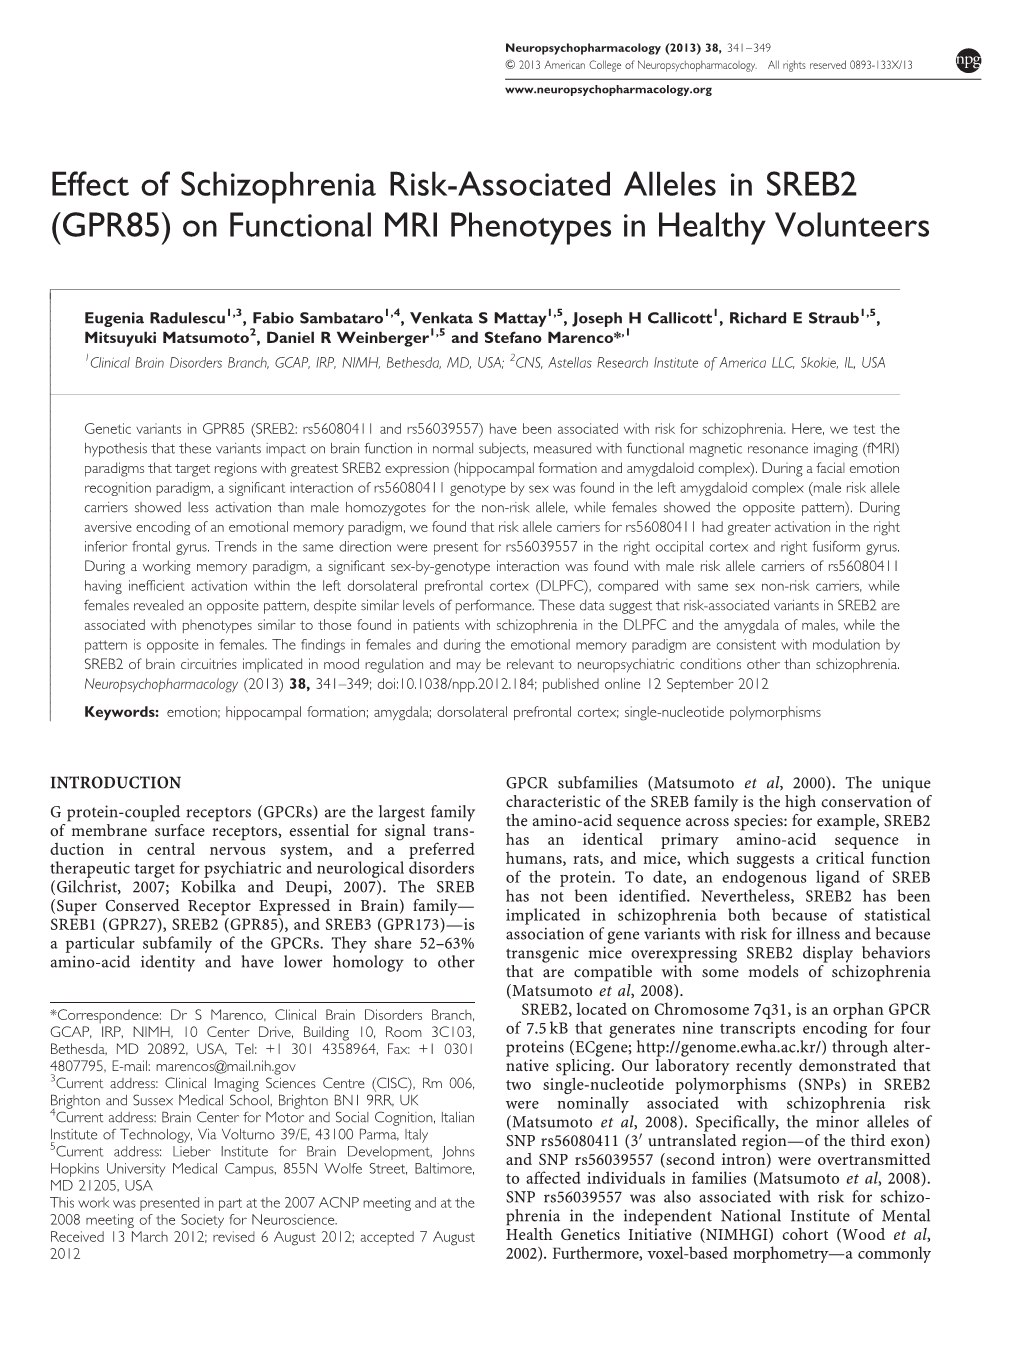 GPR85) on Functional MRI Phenotypes in Healthy Volunteers